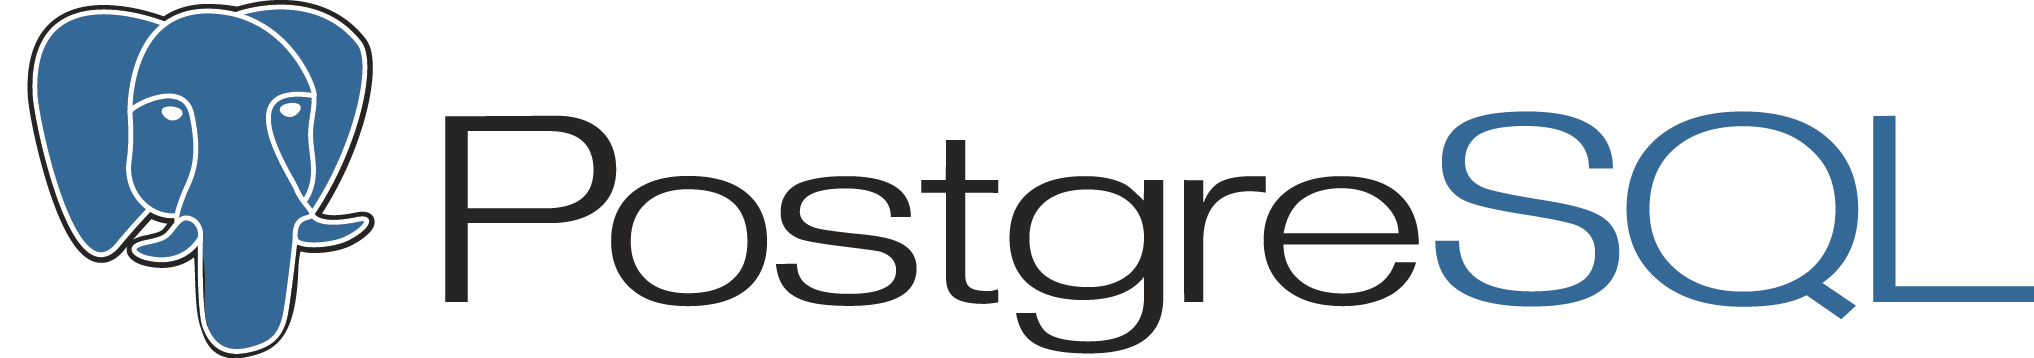 PostgreSQL Logo - Postgresql Icon #346605 - Free Icons Library